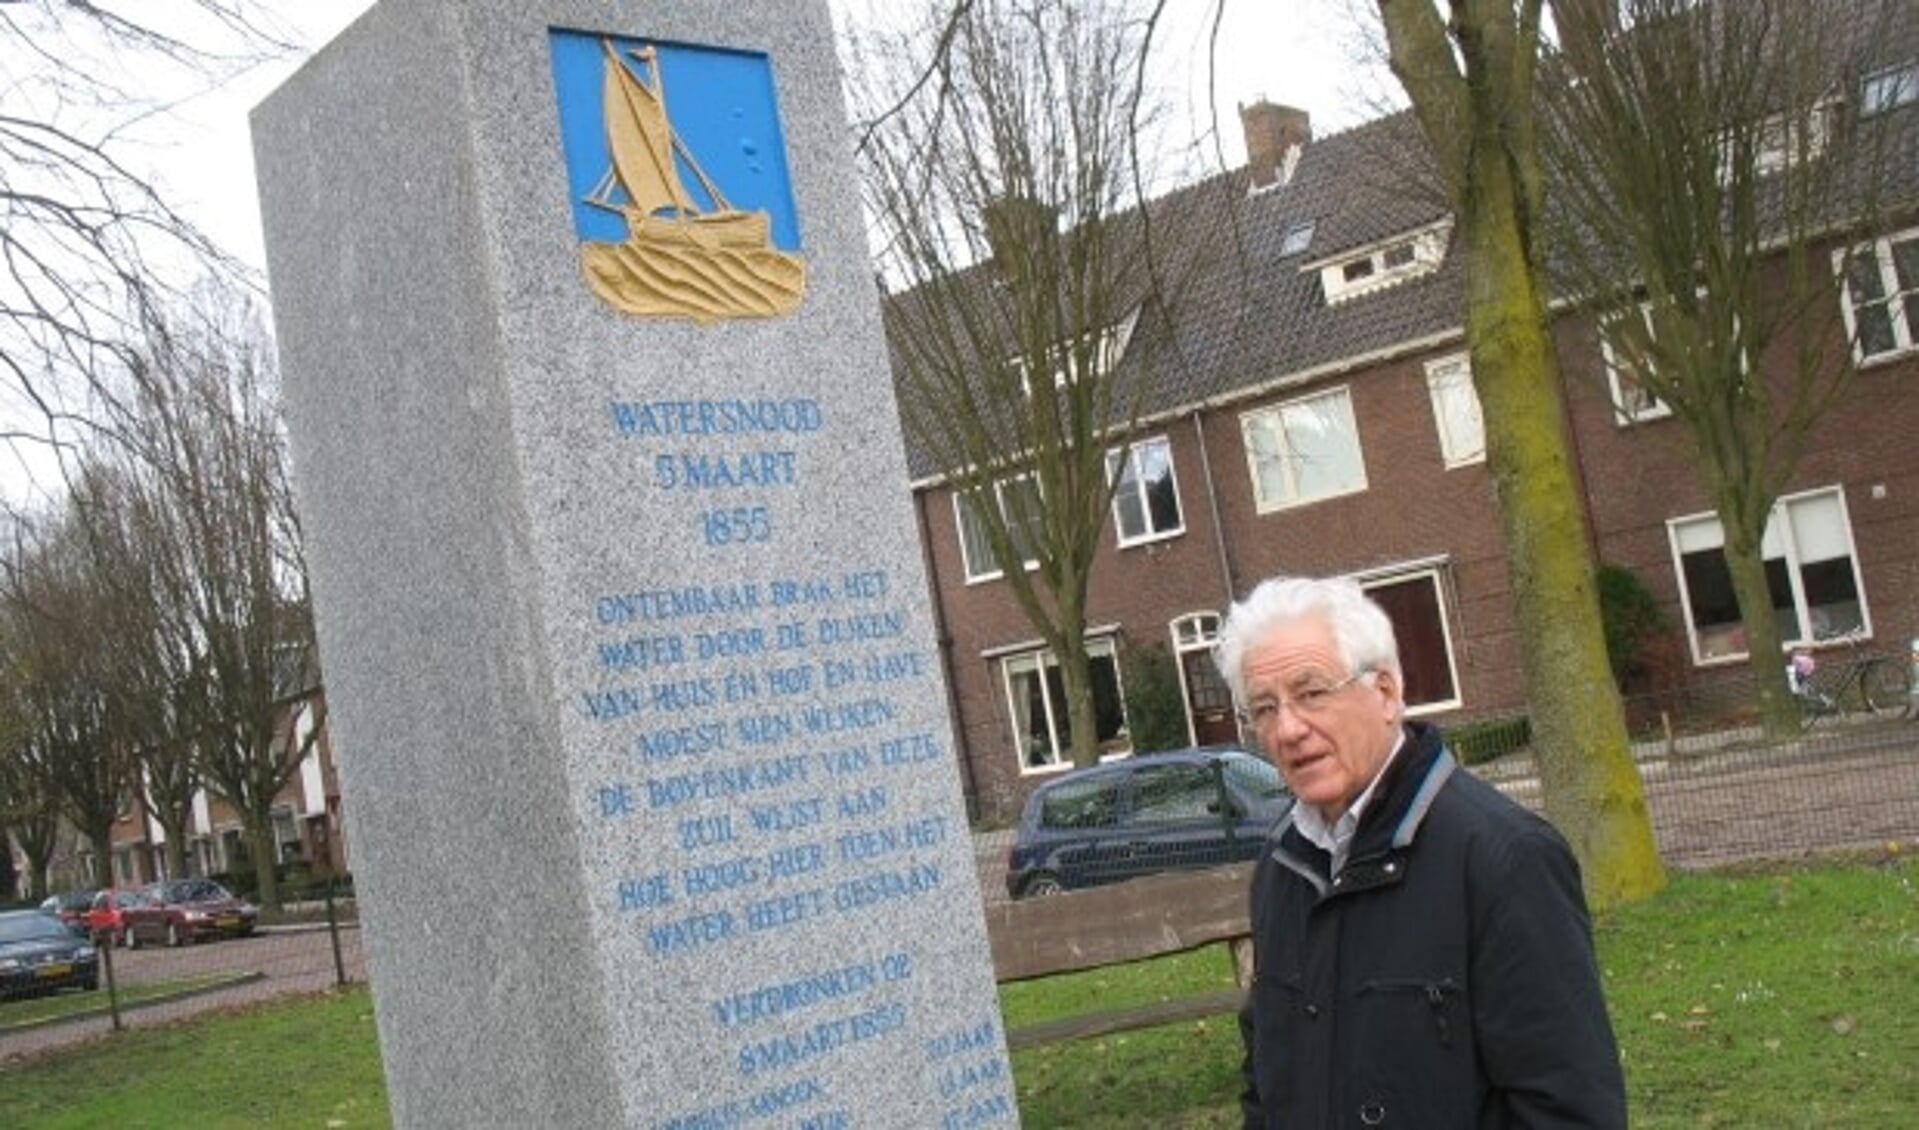 Gert van Wijk onthulde in maart 1955 het monument. Hier staat hij in 2011 bij de nieuwe zuil in het plantsoen aan de Stationssingel in Veenendaal die hij in 2005 opnieuw mocht onthullen. (Archieffoto: Martin Brink/DPG Media)